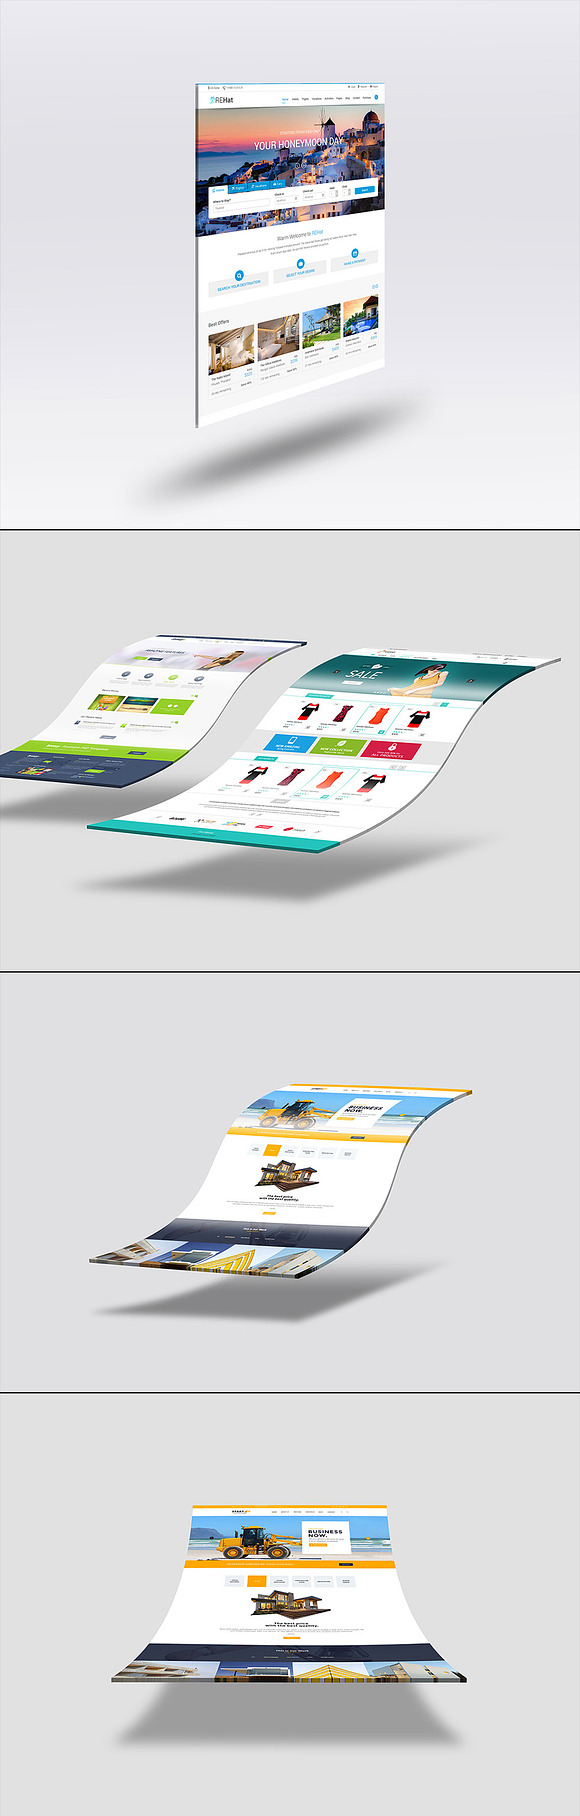 3D Website Mock-Up Bundle V1 in Mobile & Web Mockups - product preview 6